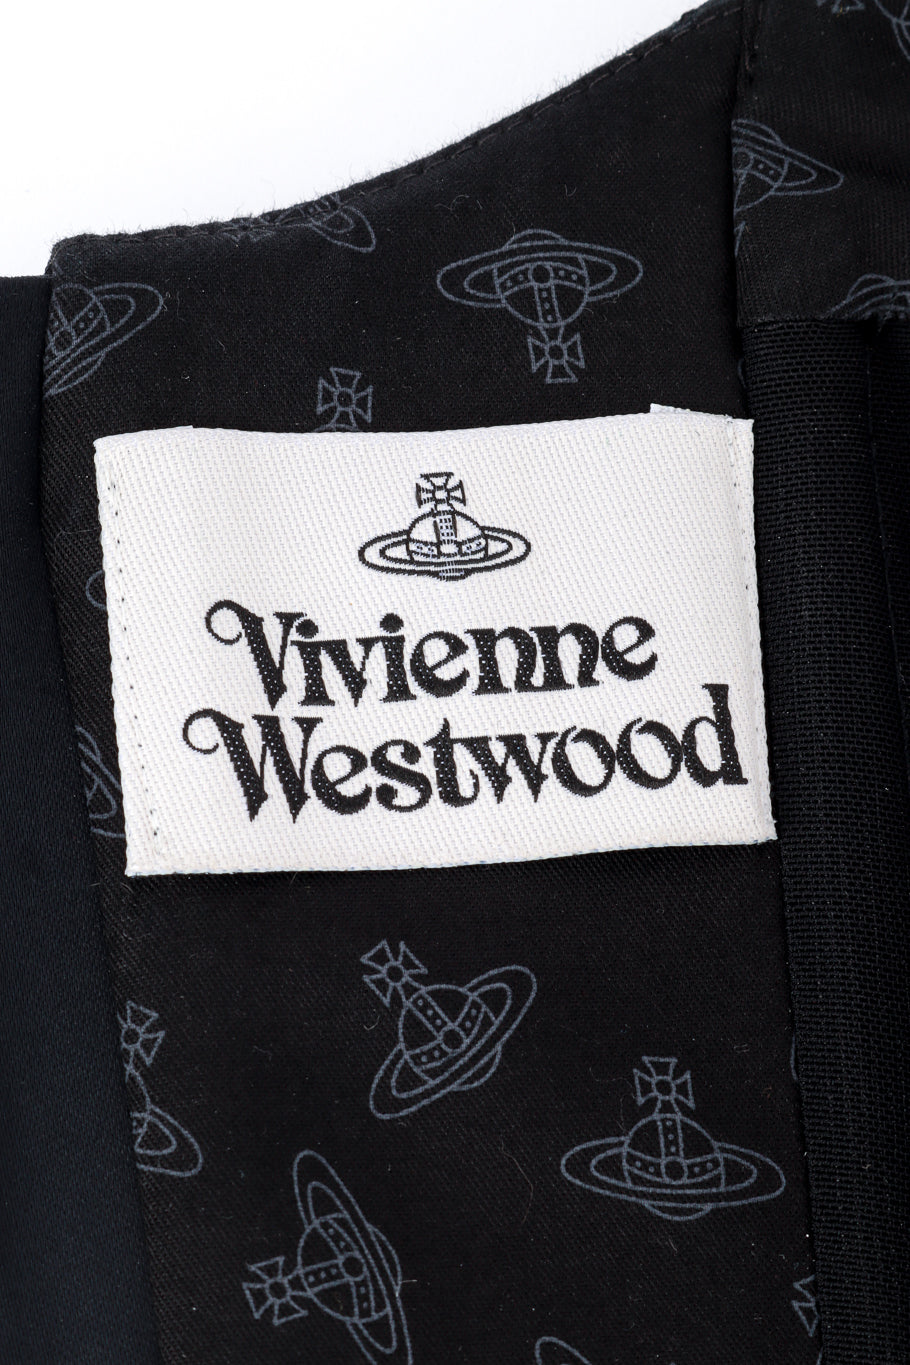 Vivienne Westwood 2022 F/W Classic Portrait Corset label @RECESS LA